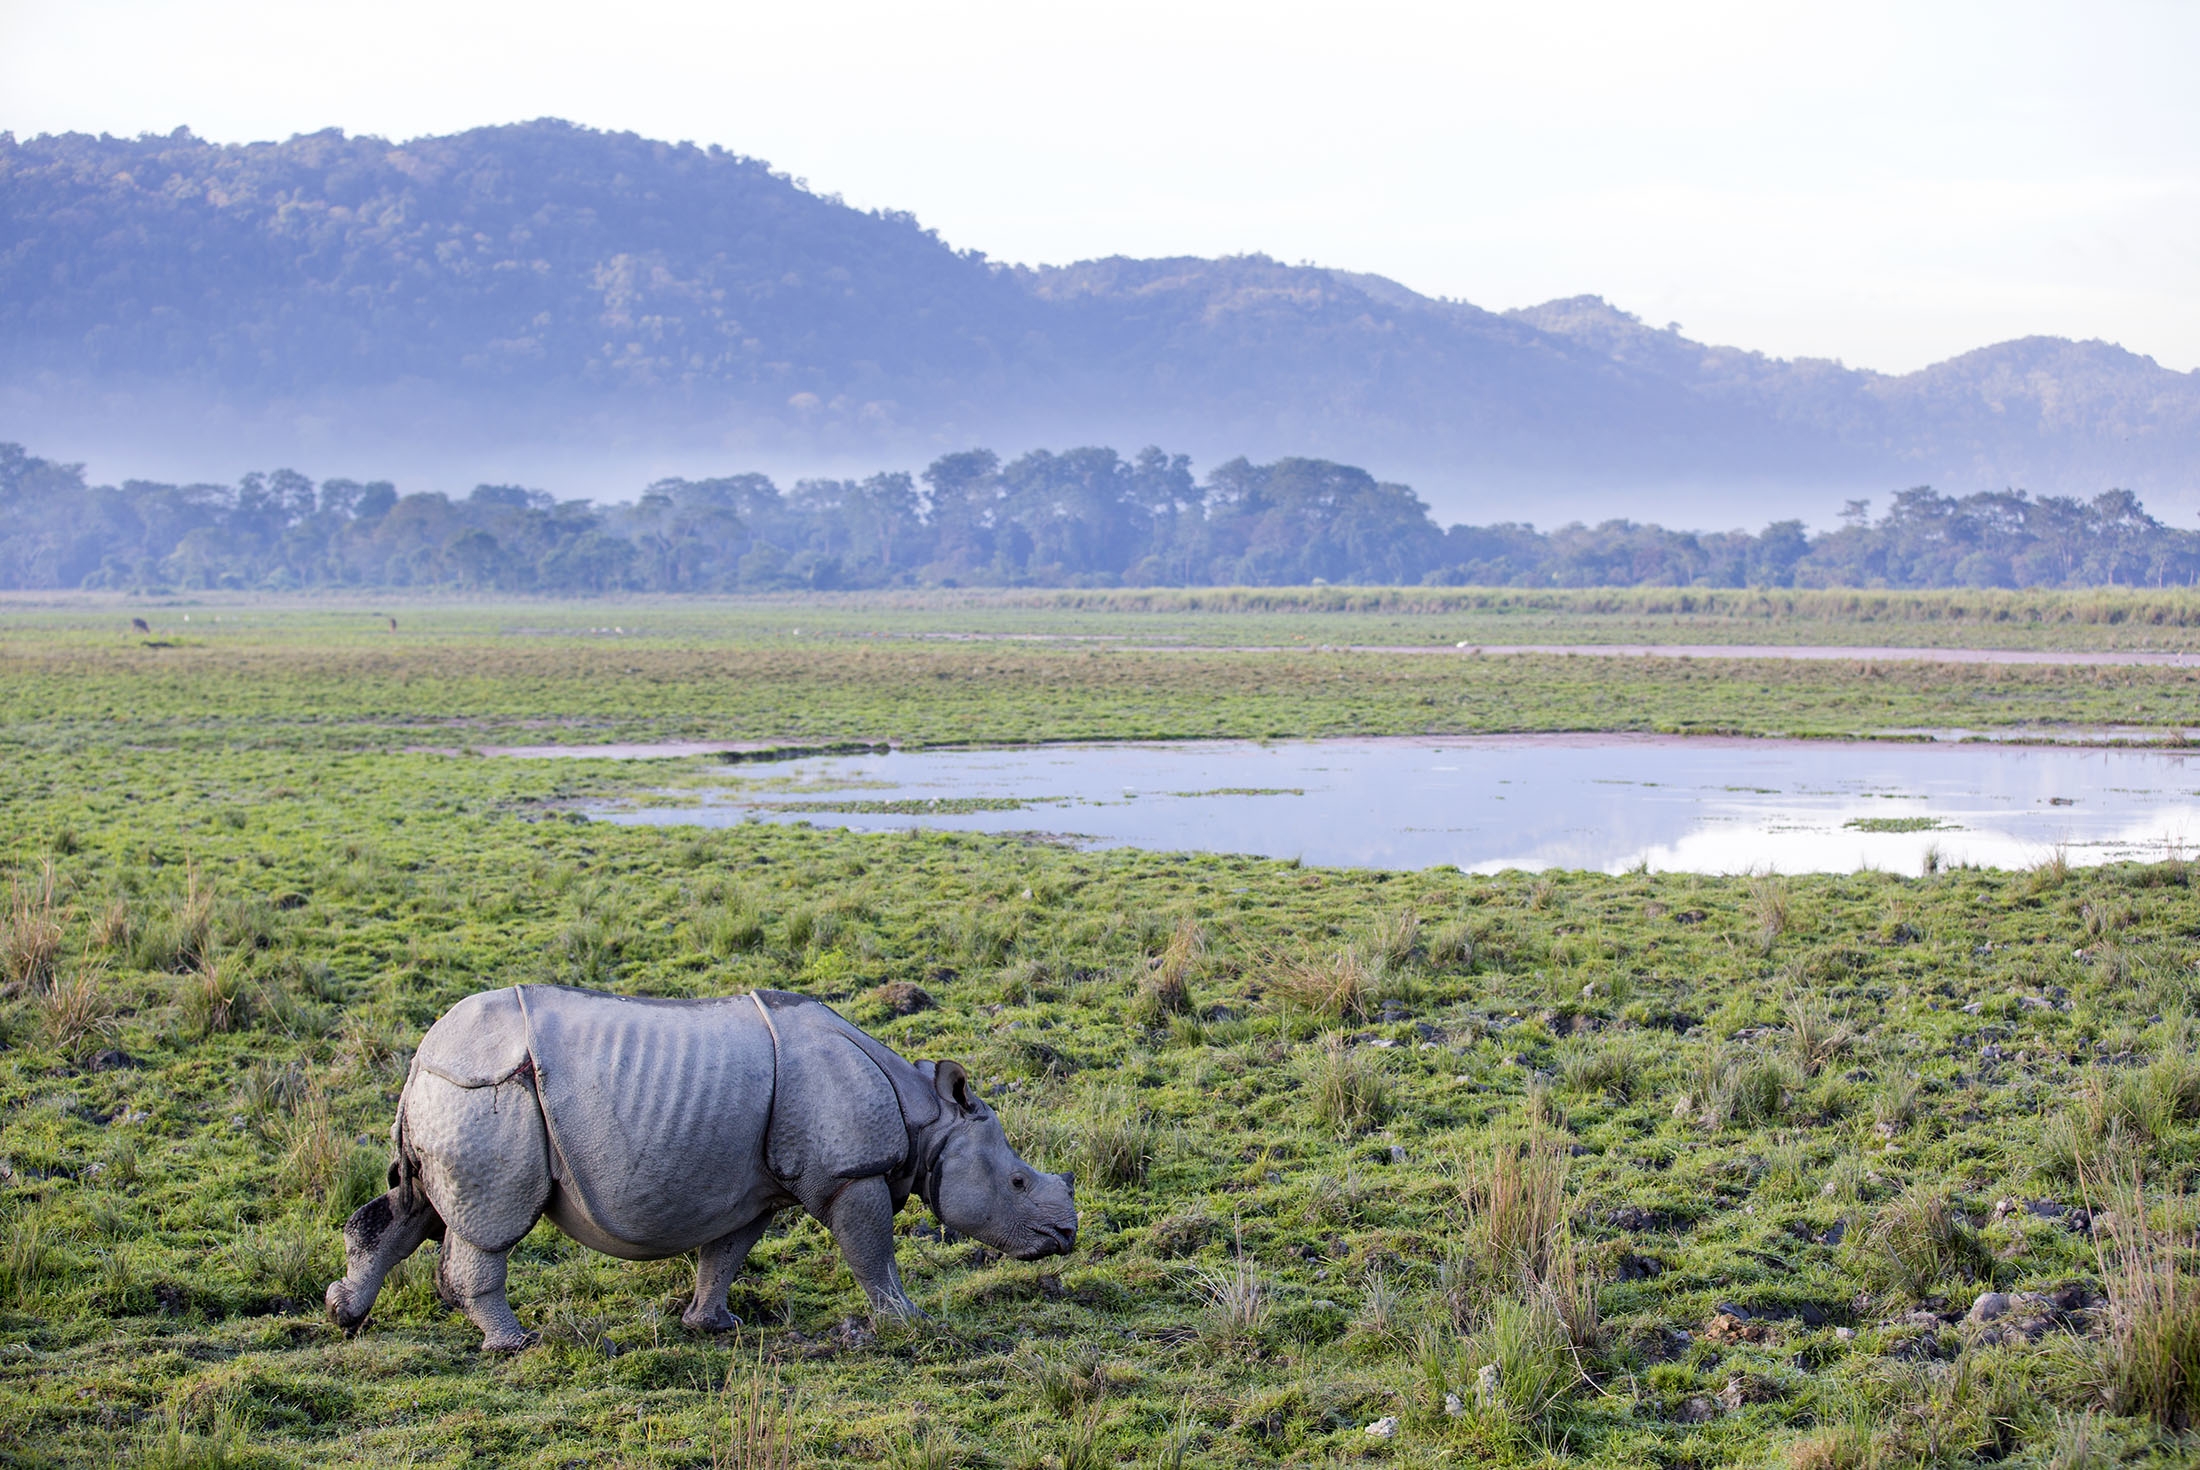 One horned rhinoceros in Kaziranga National Park - Assam, India